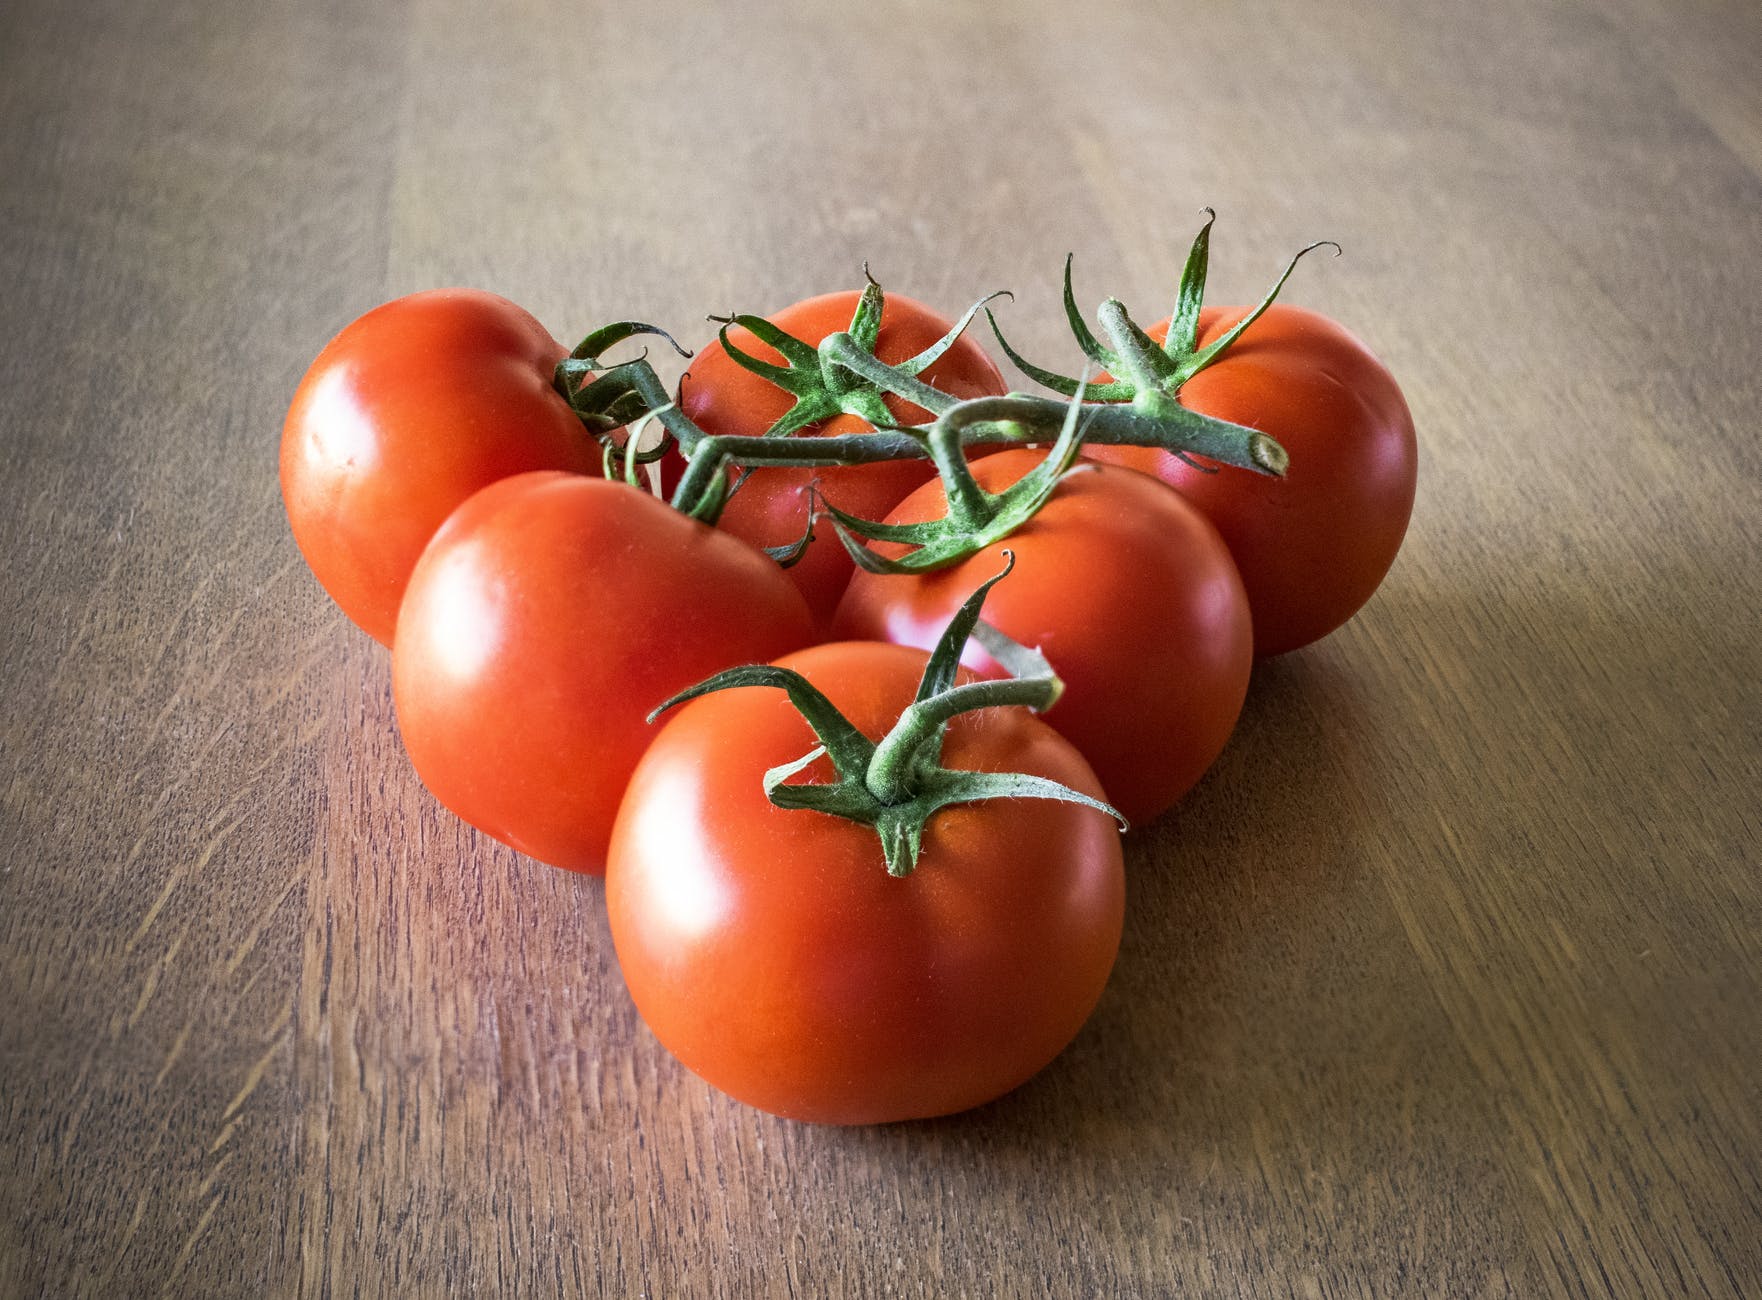 Les tomates peuvent causer des problèmes urinaires